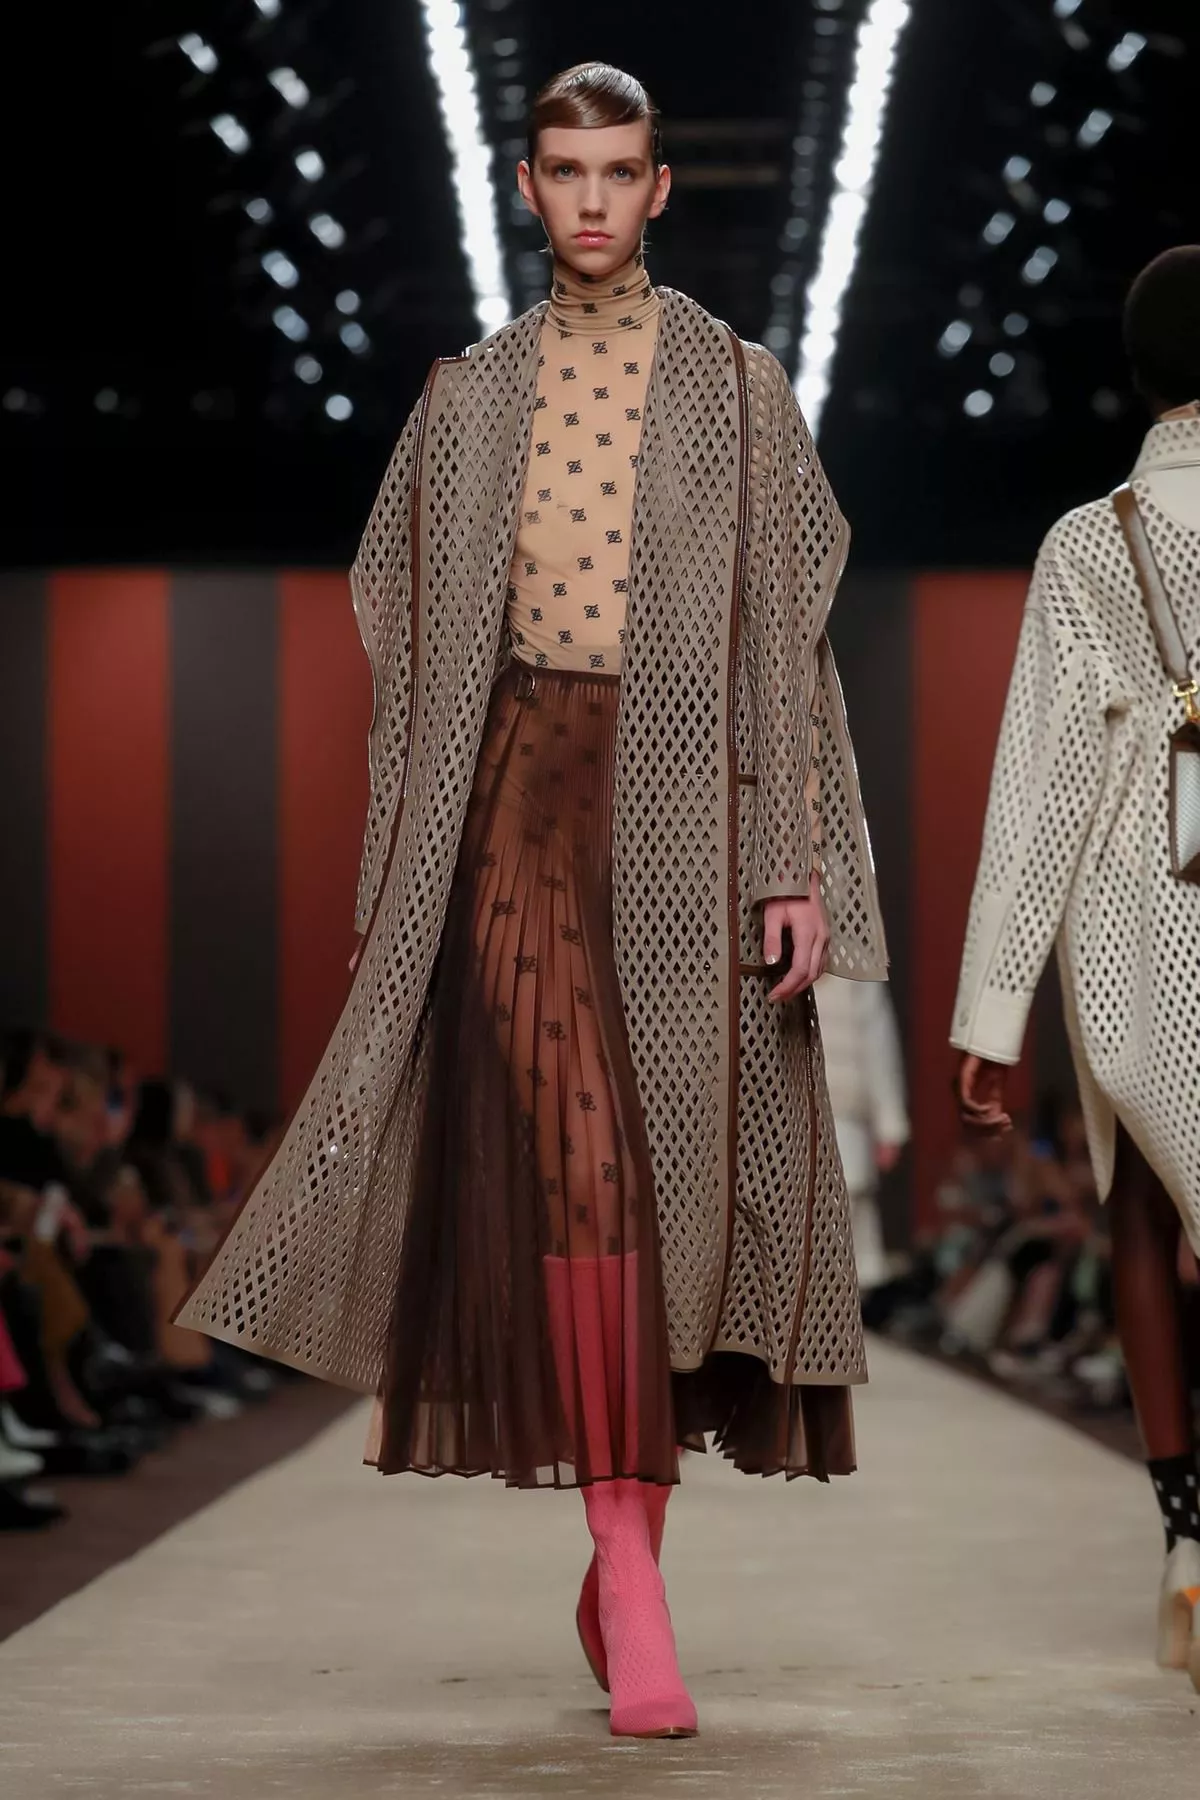 عرض Fendi لخريف 2019 ضمن أسبوع الموضة في ميلانو: مزيج بين الأنثويّ والذكوريّ بلمسات Karl Lagerfeld الأيقونيّة